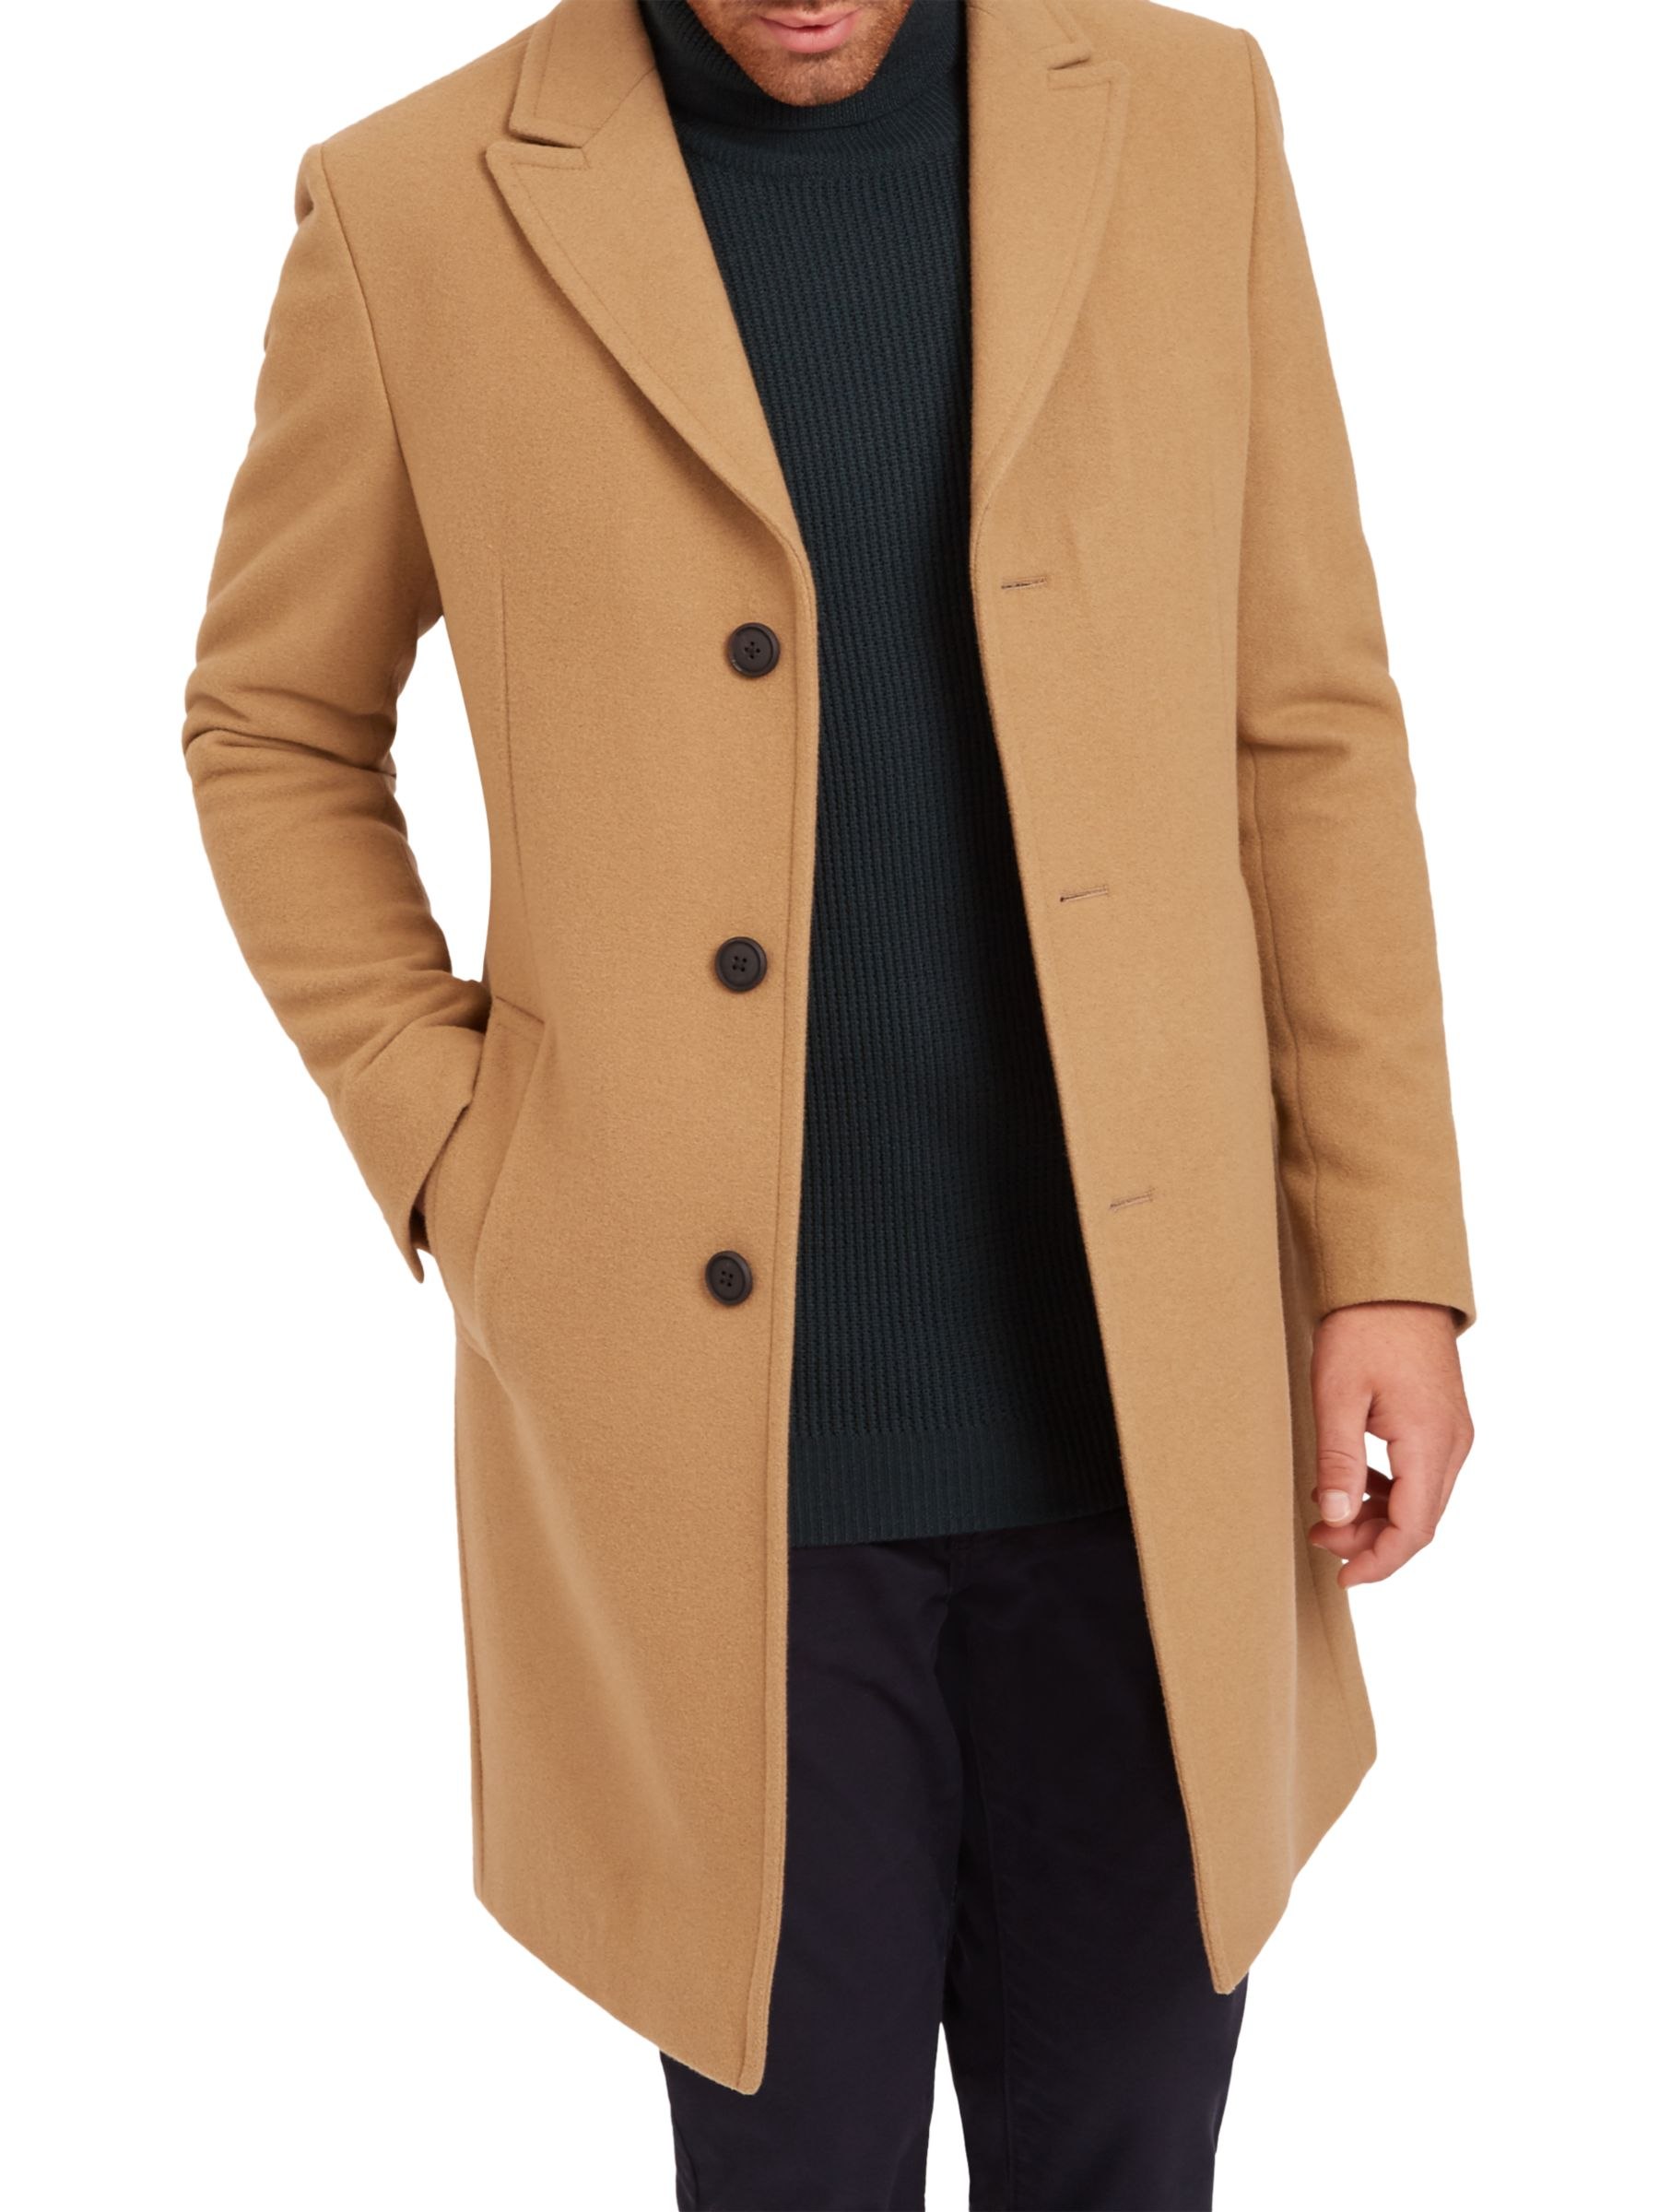 Вайлдберриз пальто мужское. Боттега пальто мужское кашемировое пальто. Пальто кэмэл мужское длинное. Пальто Честерфилд мужское.